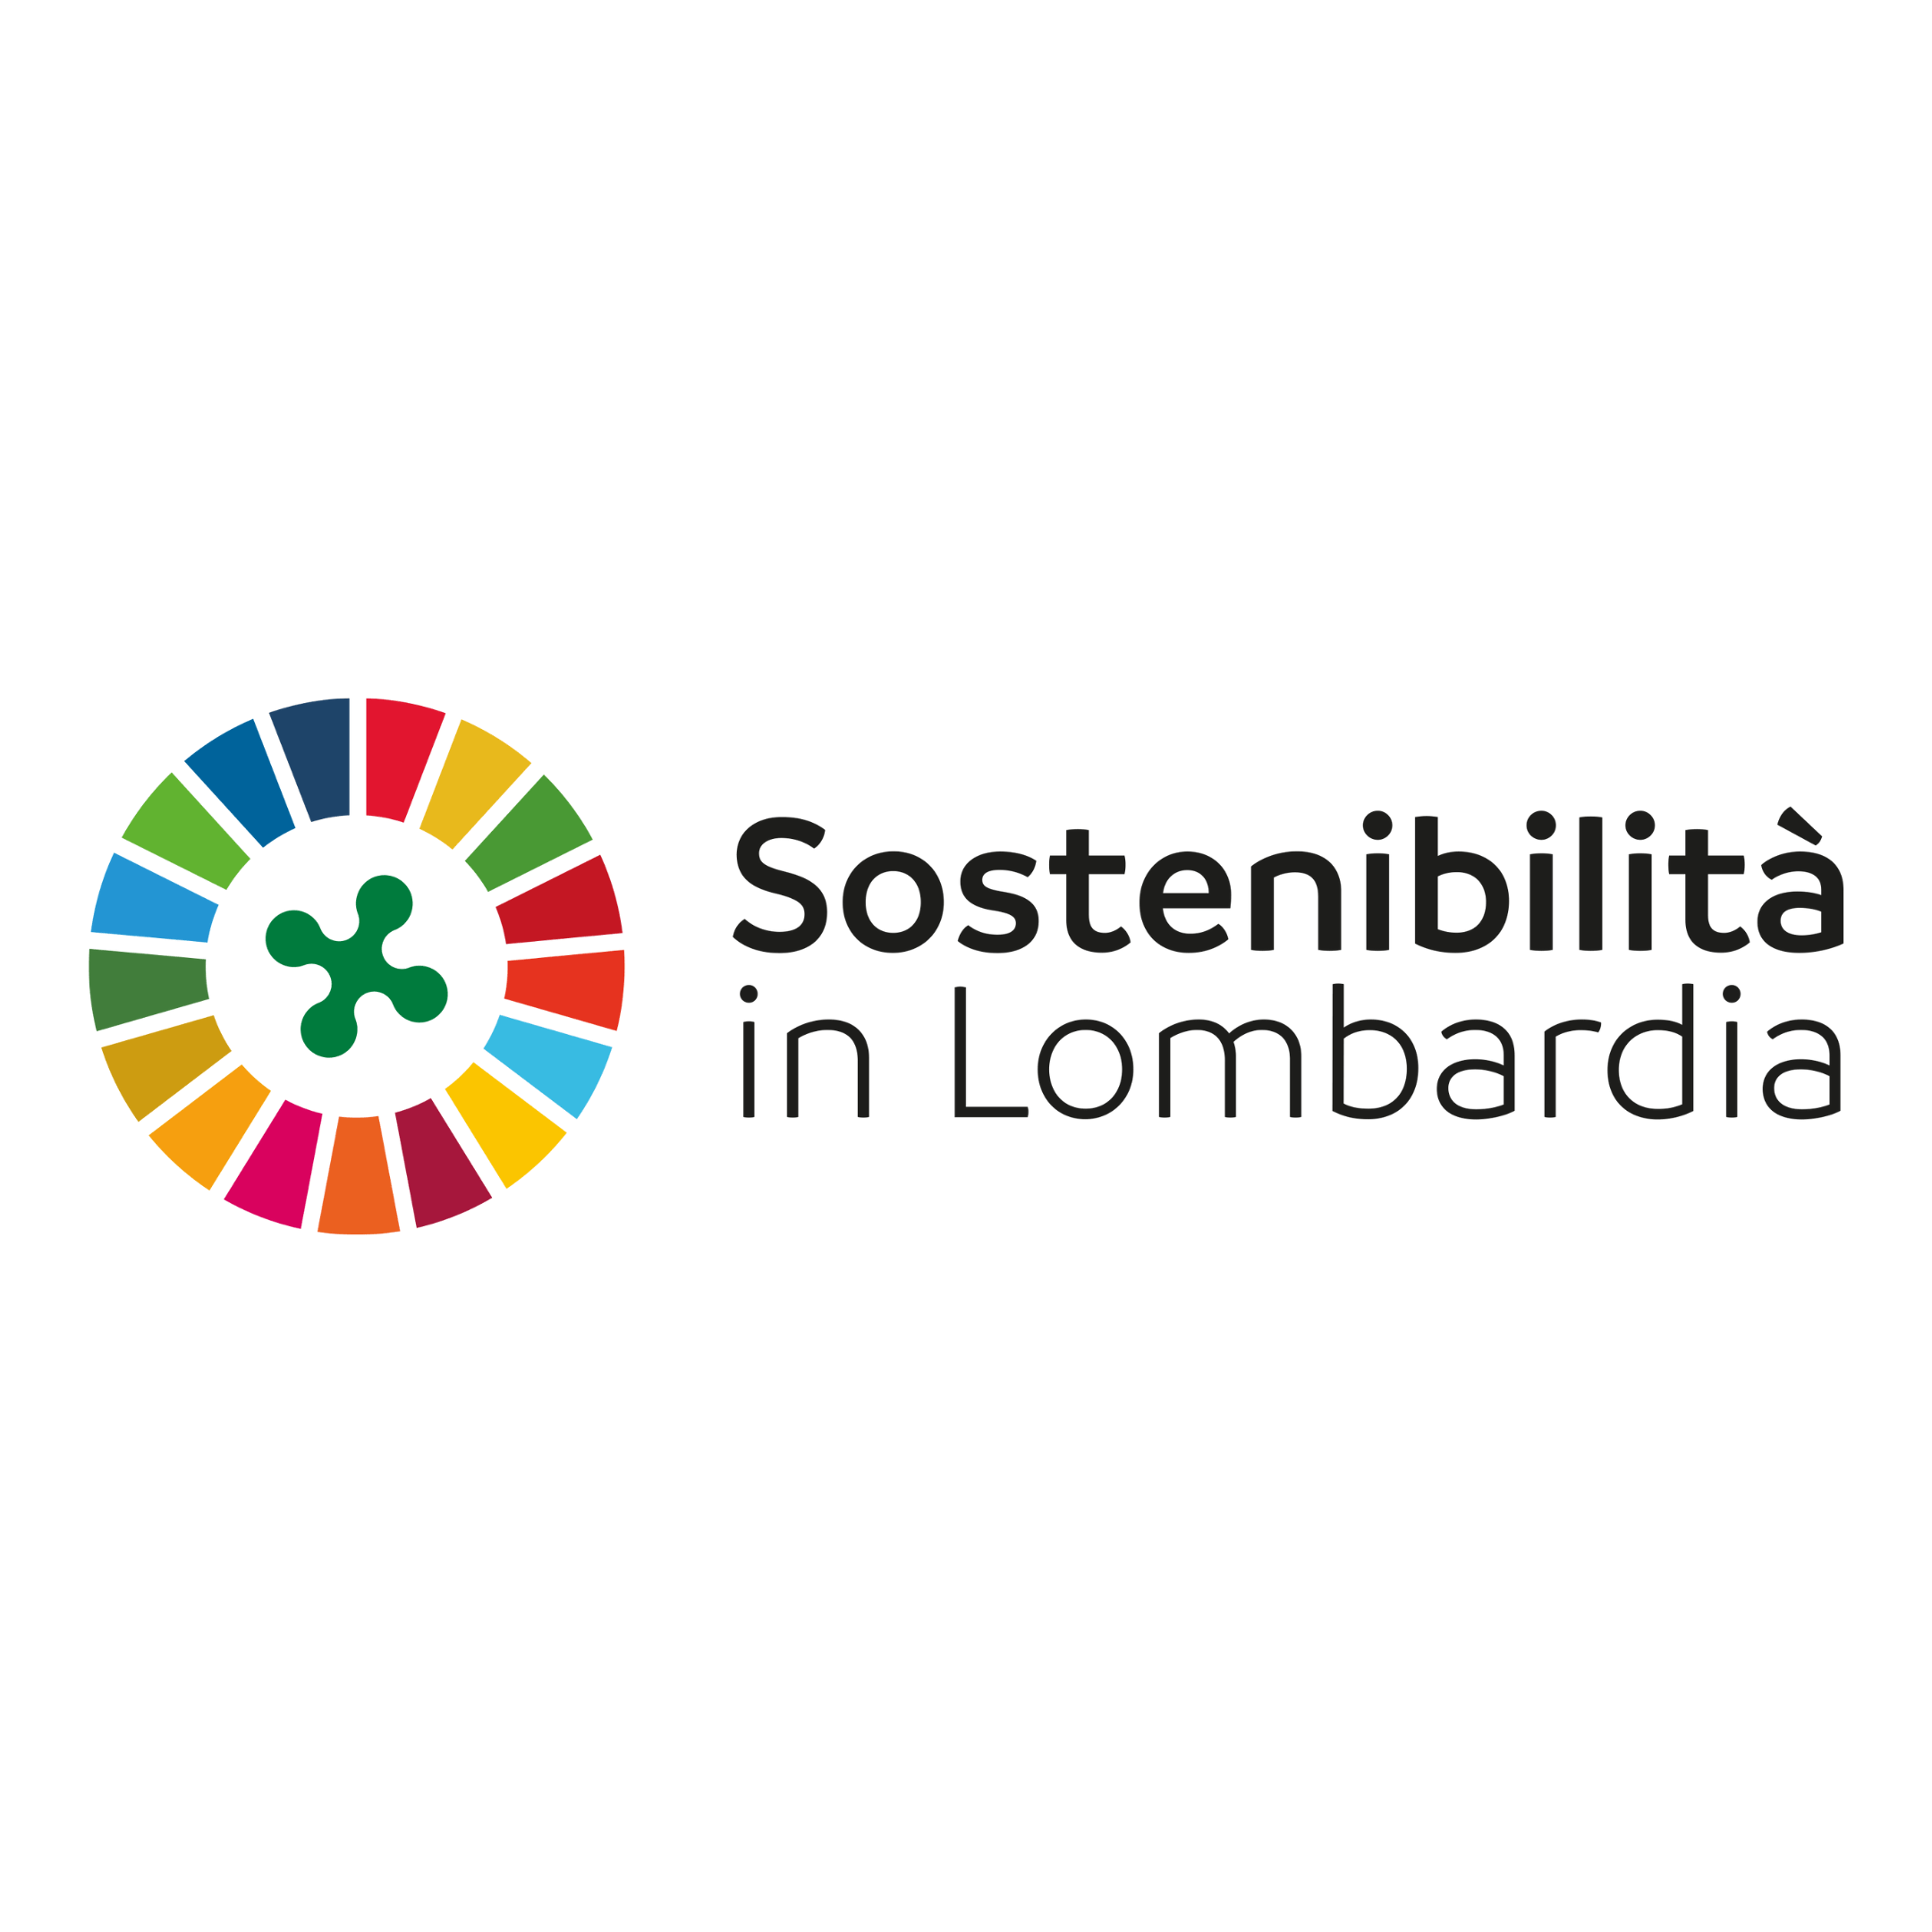 Sostenibilità in Lombardia